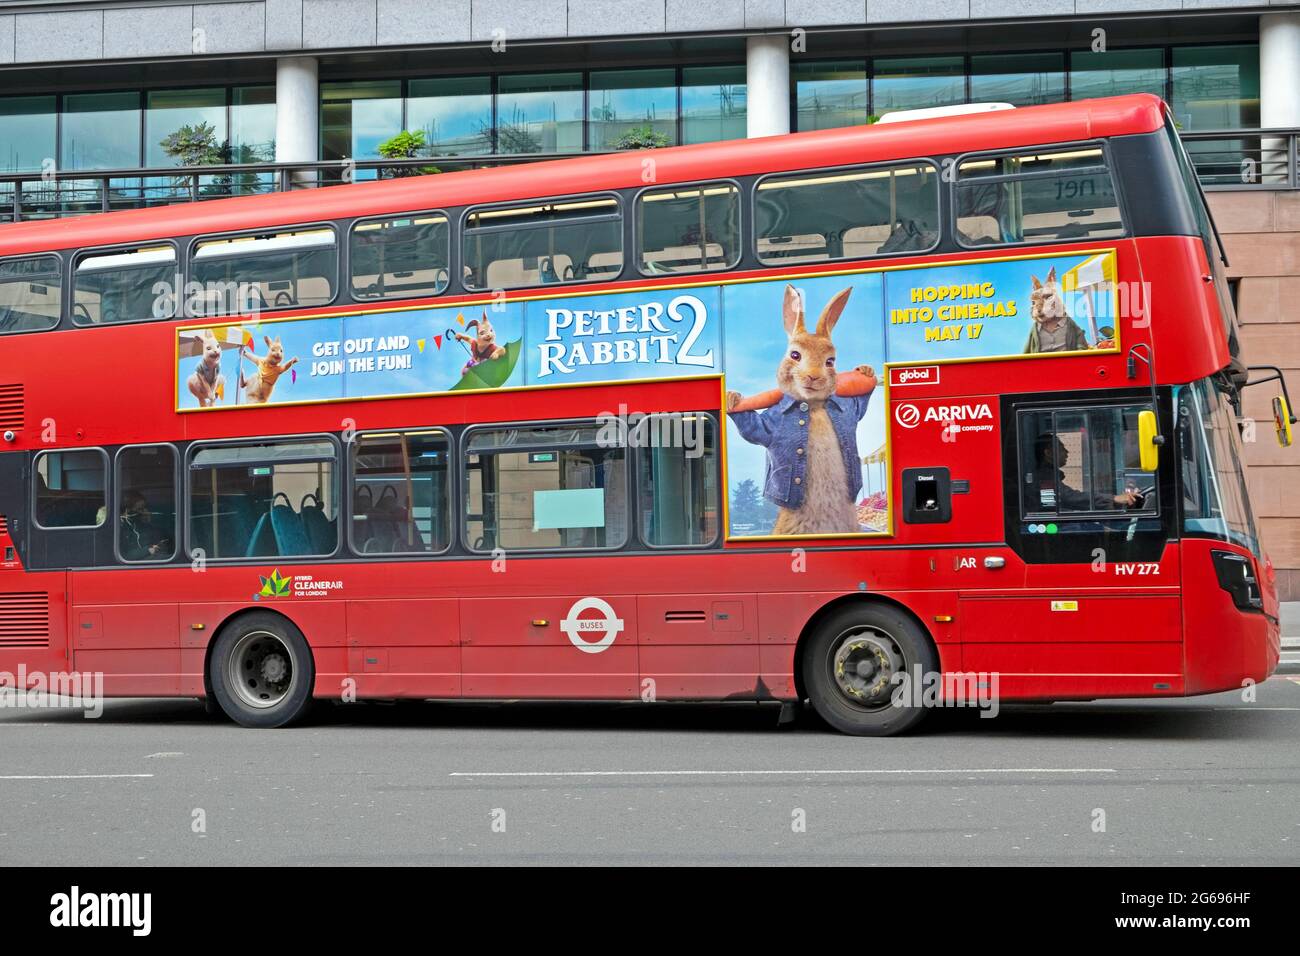 Peter Rabbit 2 publicité sur le côté d'un autobus sale de Londres pendant la pandémie de covid à Smithfield Londres Angleterre KATHY DEWITT Banque D'Images